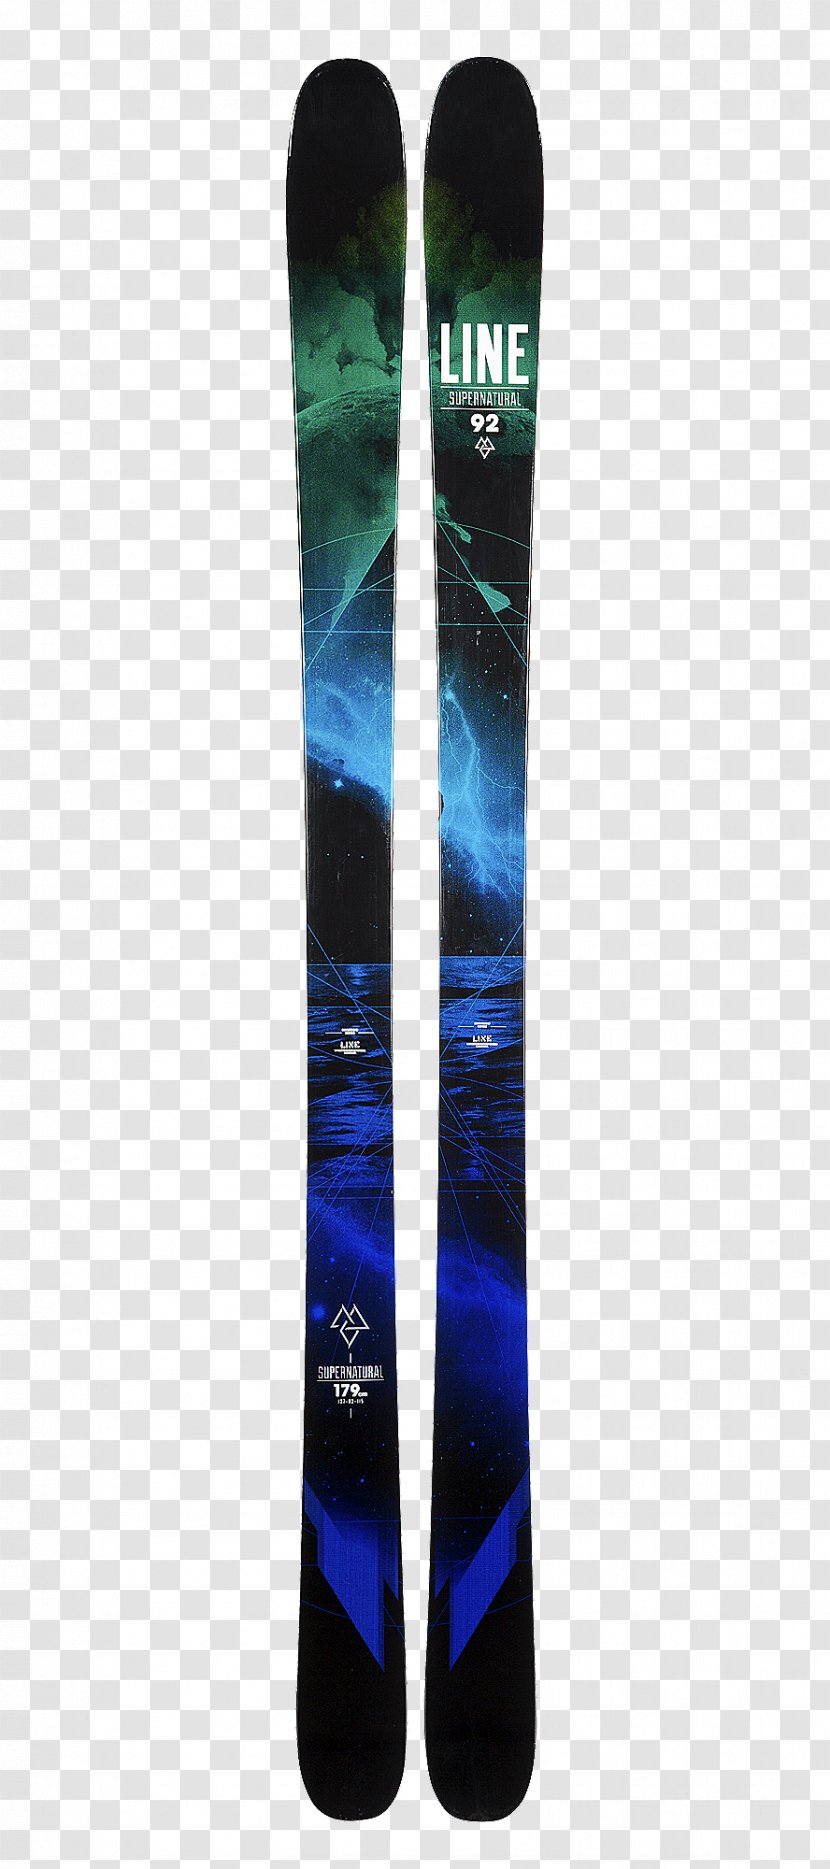 Ski Bindings Line Skis Supernatural 92 2015/16 Skiing Transparent PNG